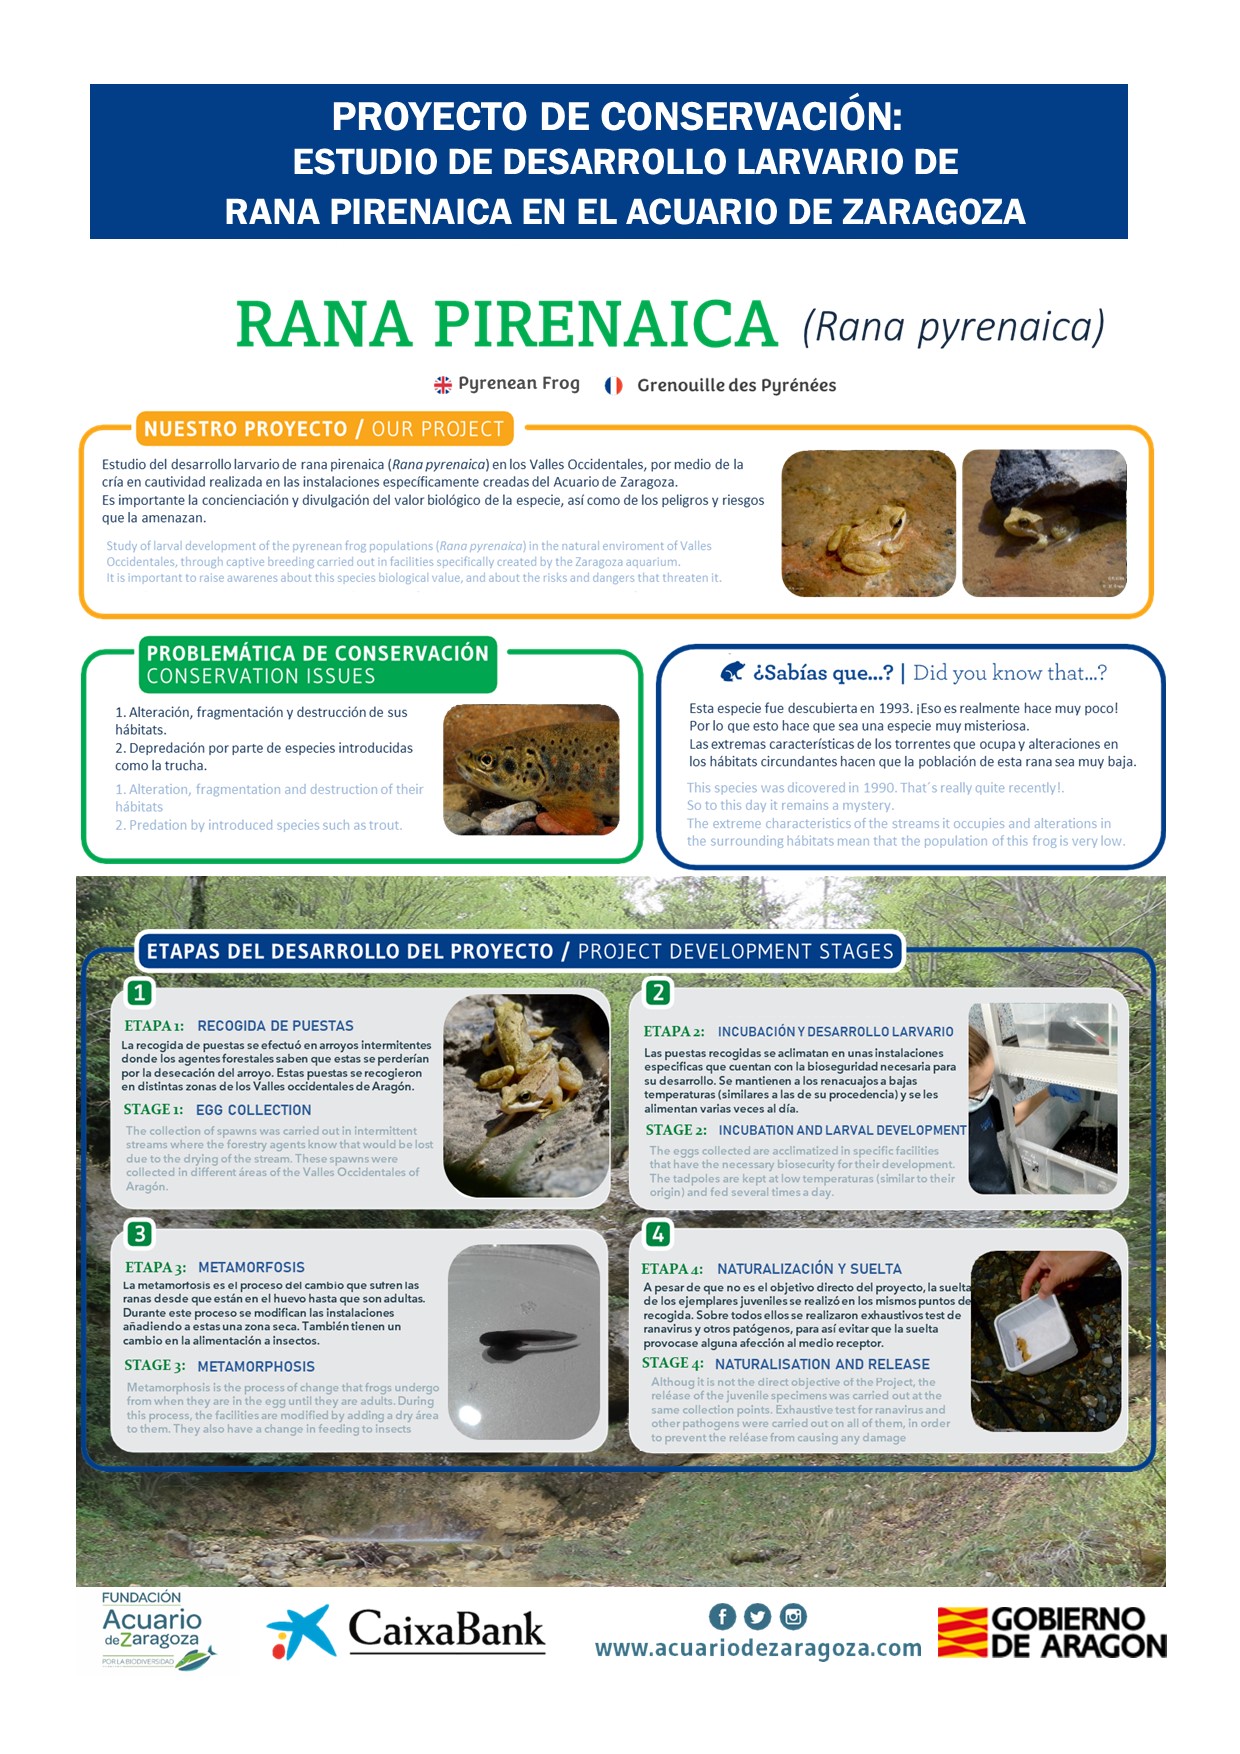 Proyecto de Conservacion Rana pyrenaica Fundación Acuario de Zaragoza por la Biodiversidad